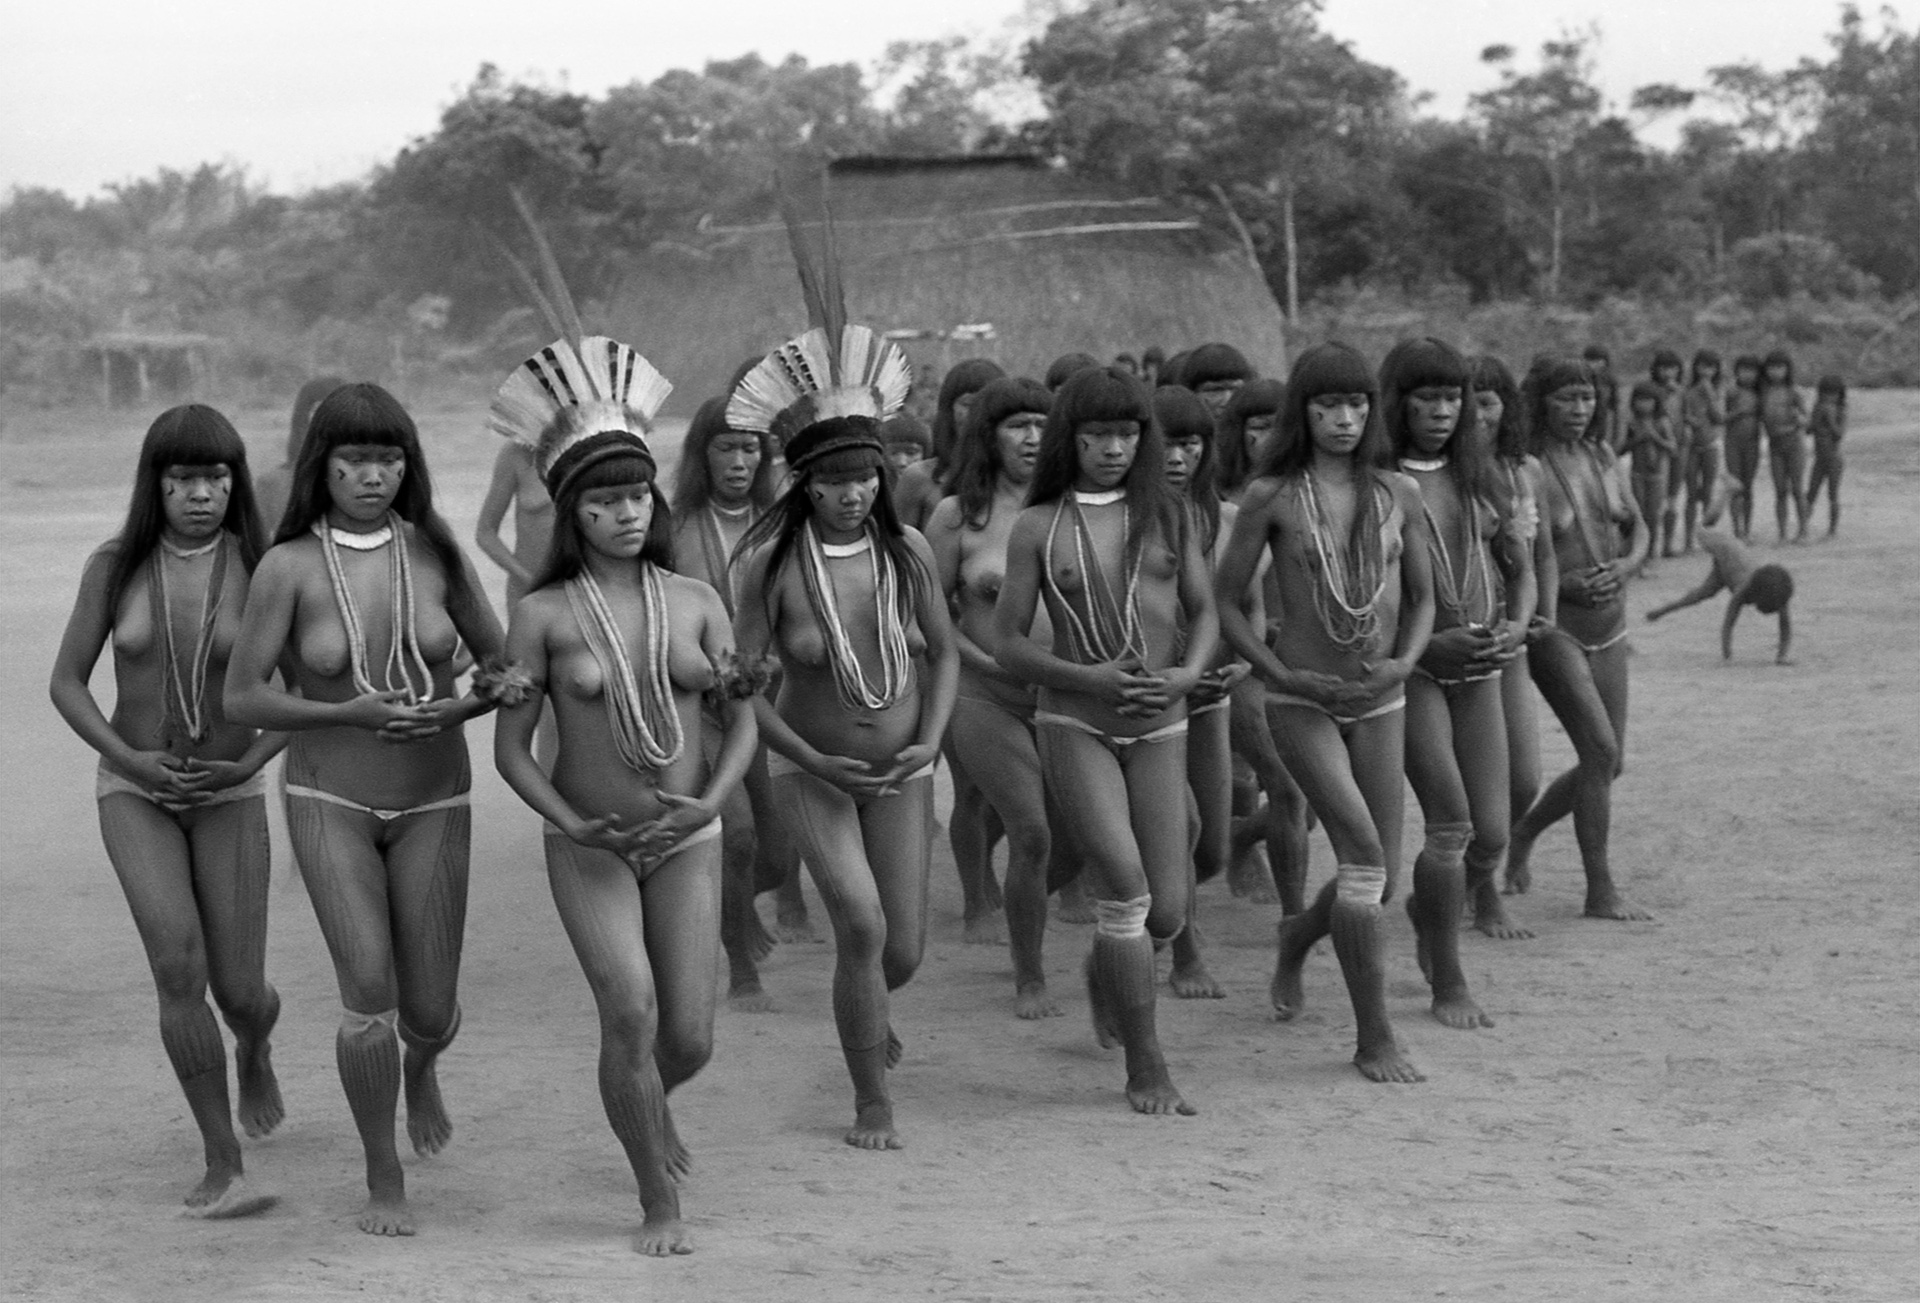 O Yamurikumá é um raro ritual de afirmação feminina numa sociedade patriarcal. Nesse dia de festa as mulheres se enfeitam, cantam, dançam e simbolicamente “tomam conta da aldeia. (Aldeia Ipavu, do povo Kamayurá, Território Indígena do Xingu, Brasil, 1973)